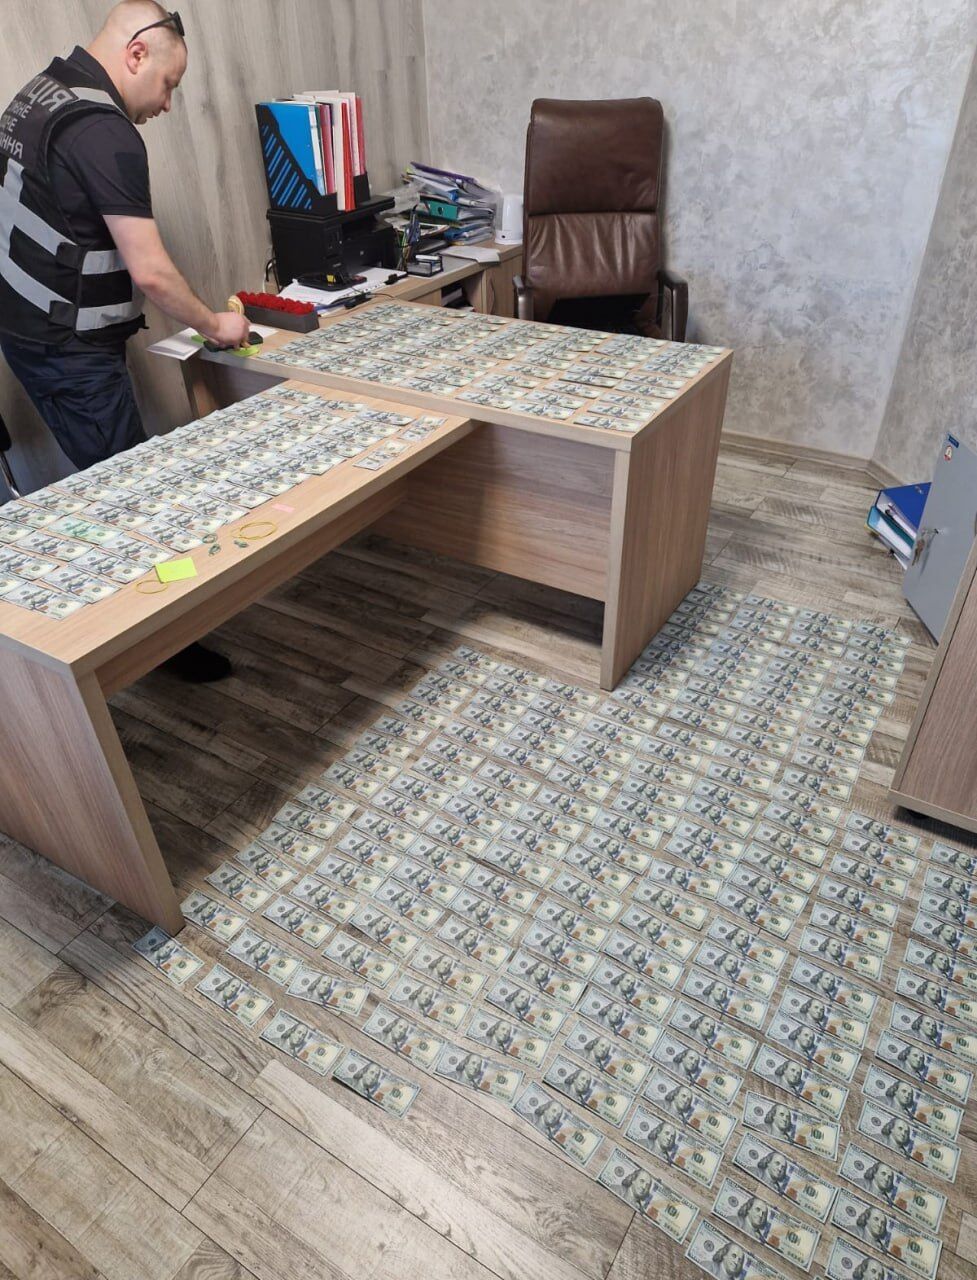 СБУ задержала депутата из Кропивницкого, занимавшегося рэкетом: деньги выбивали из предпринимателя. Фото